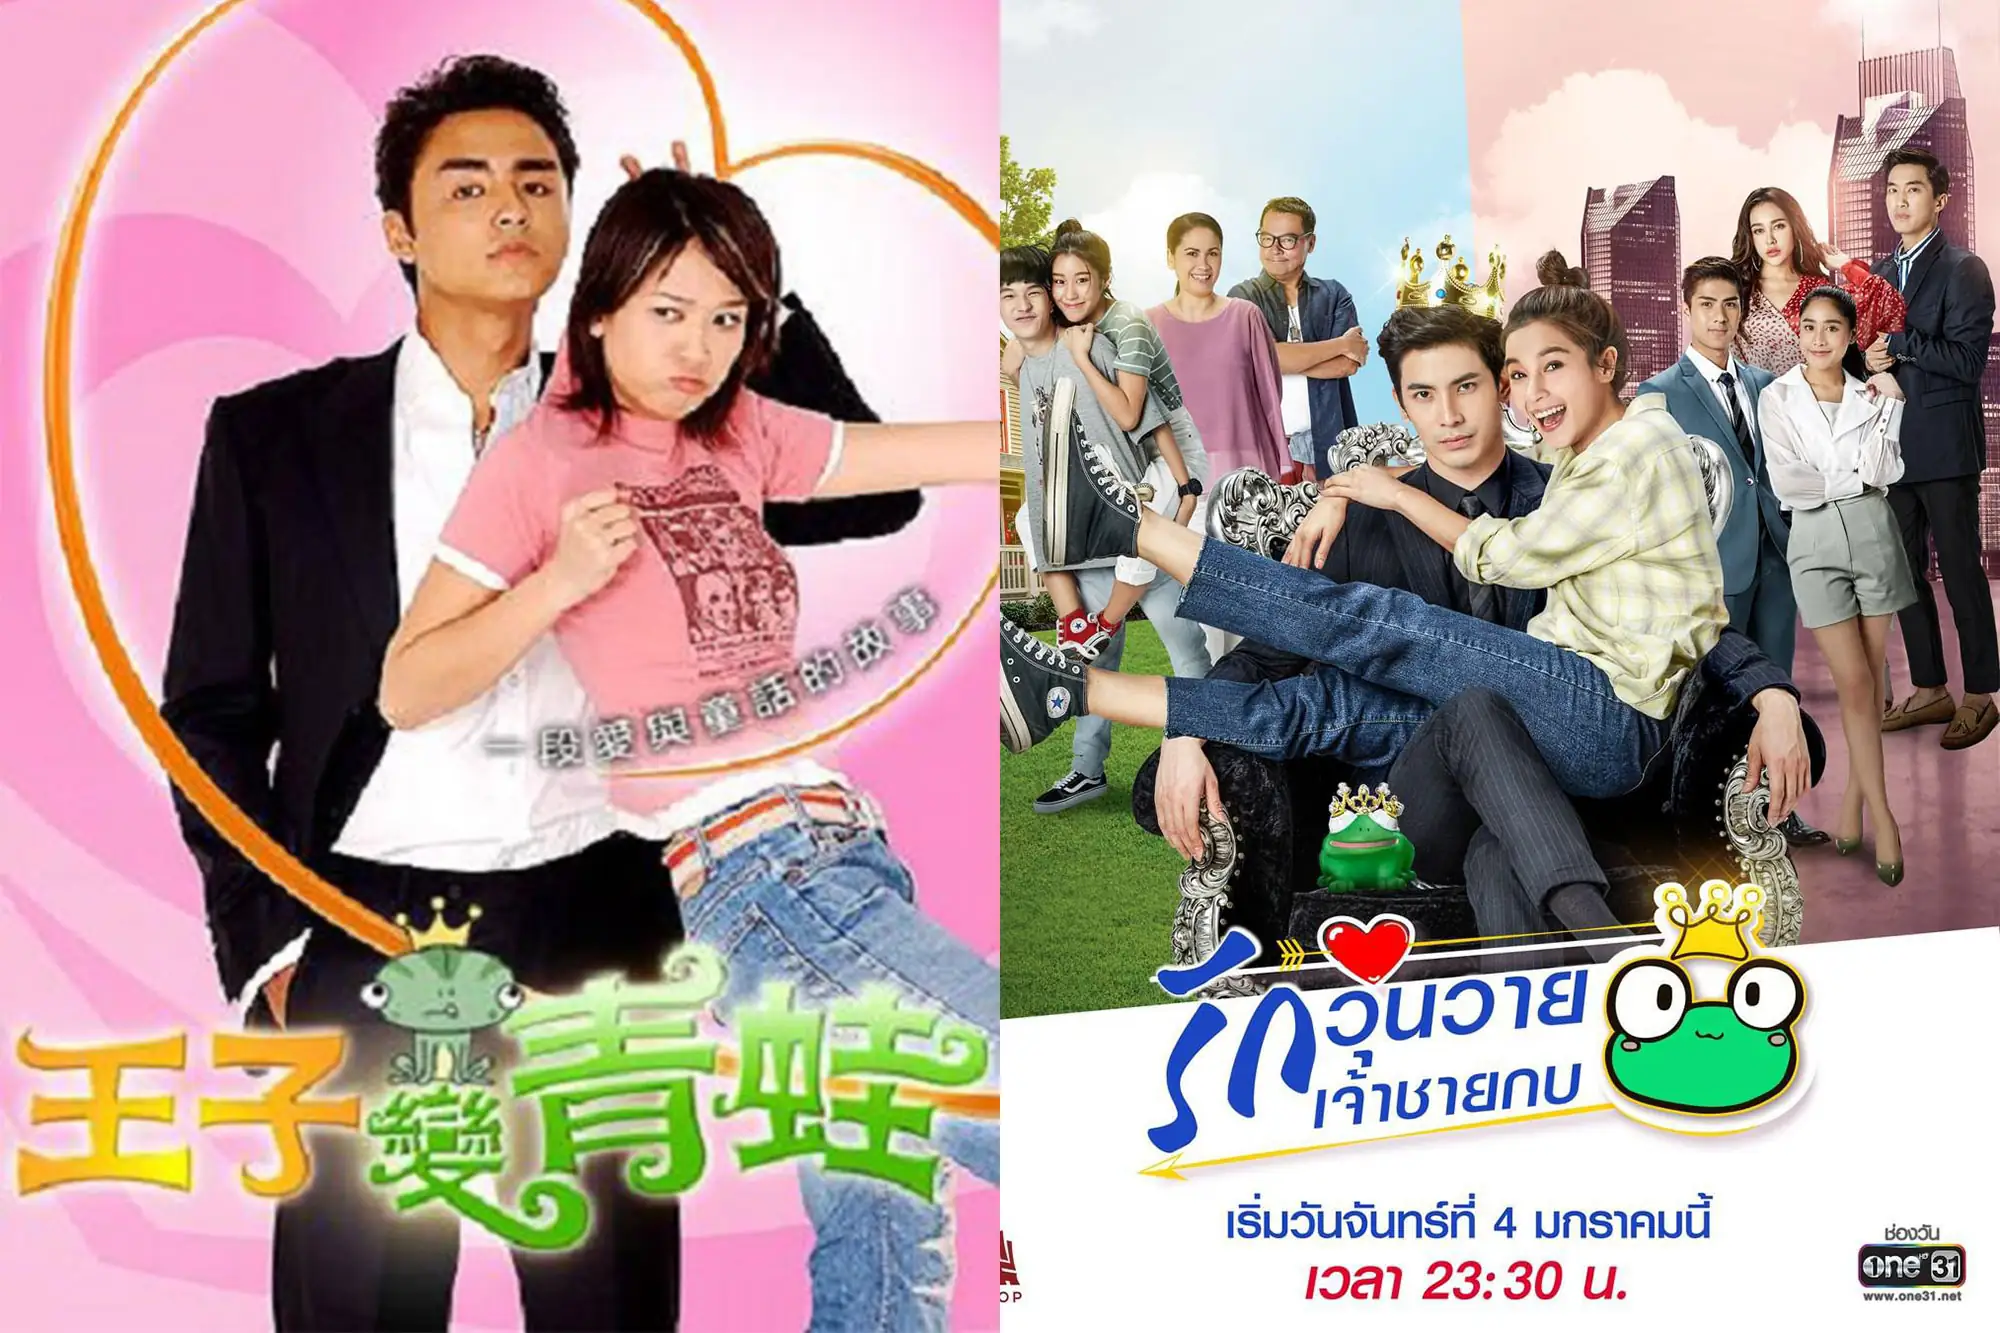 原版《王子变青蛙》于2005年在台湾首播，泰版《王子变青蛙》由颂恩·宋帕山(Son)和婉娜拉·宋提查(Vill)主演（图片来源：豆瓣）